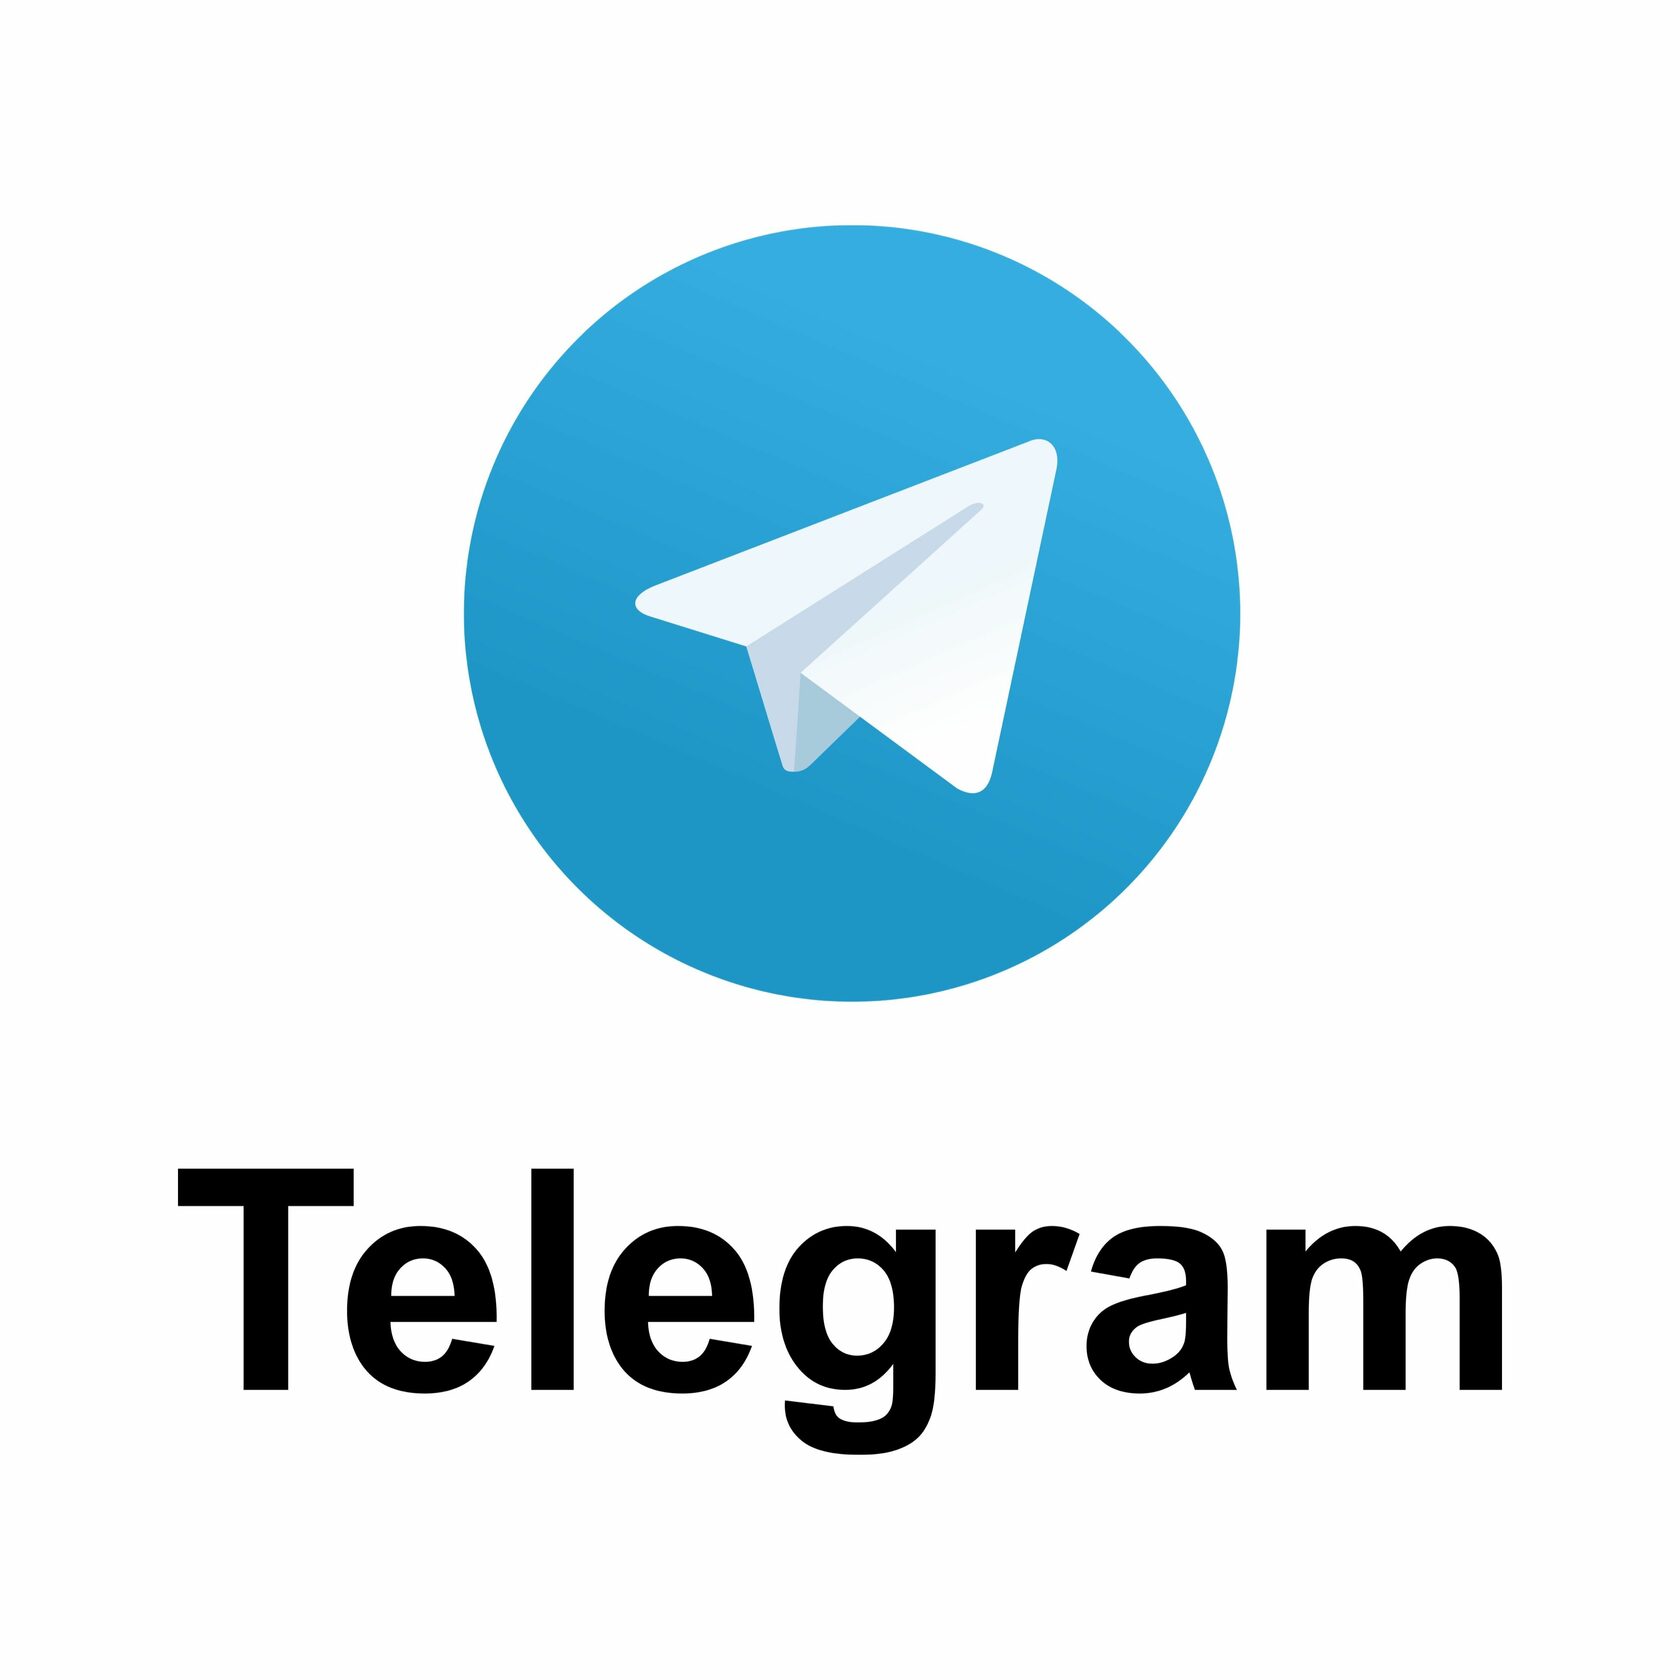 Скачать телеграмм на компьютер на русском языке через торрент бесплатно фото 84